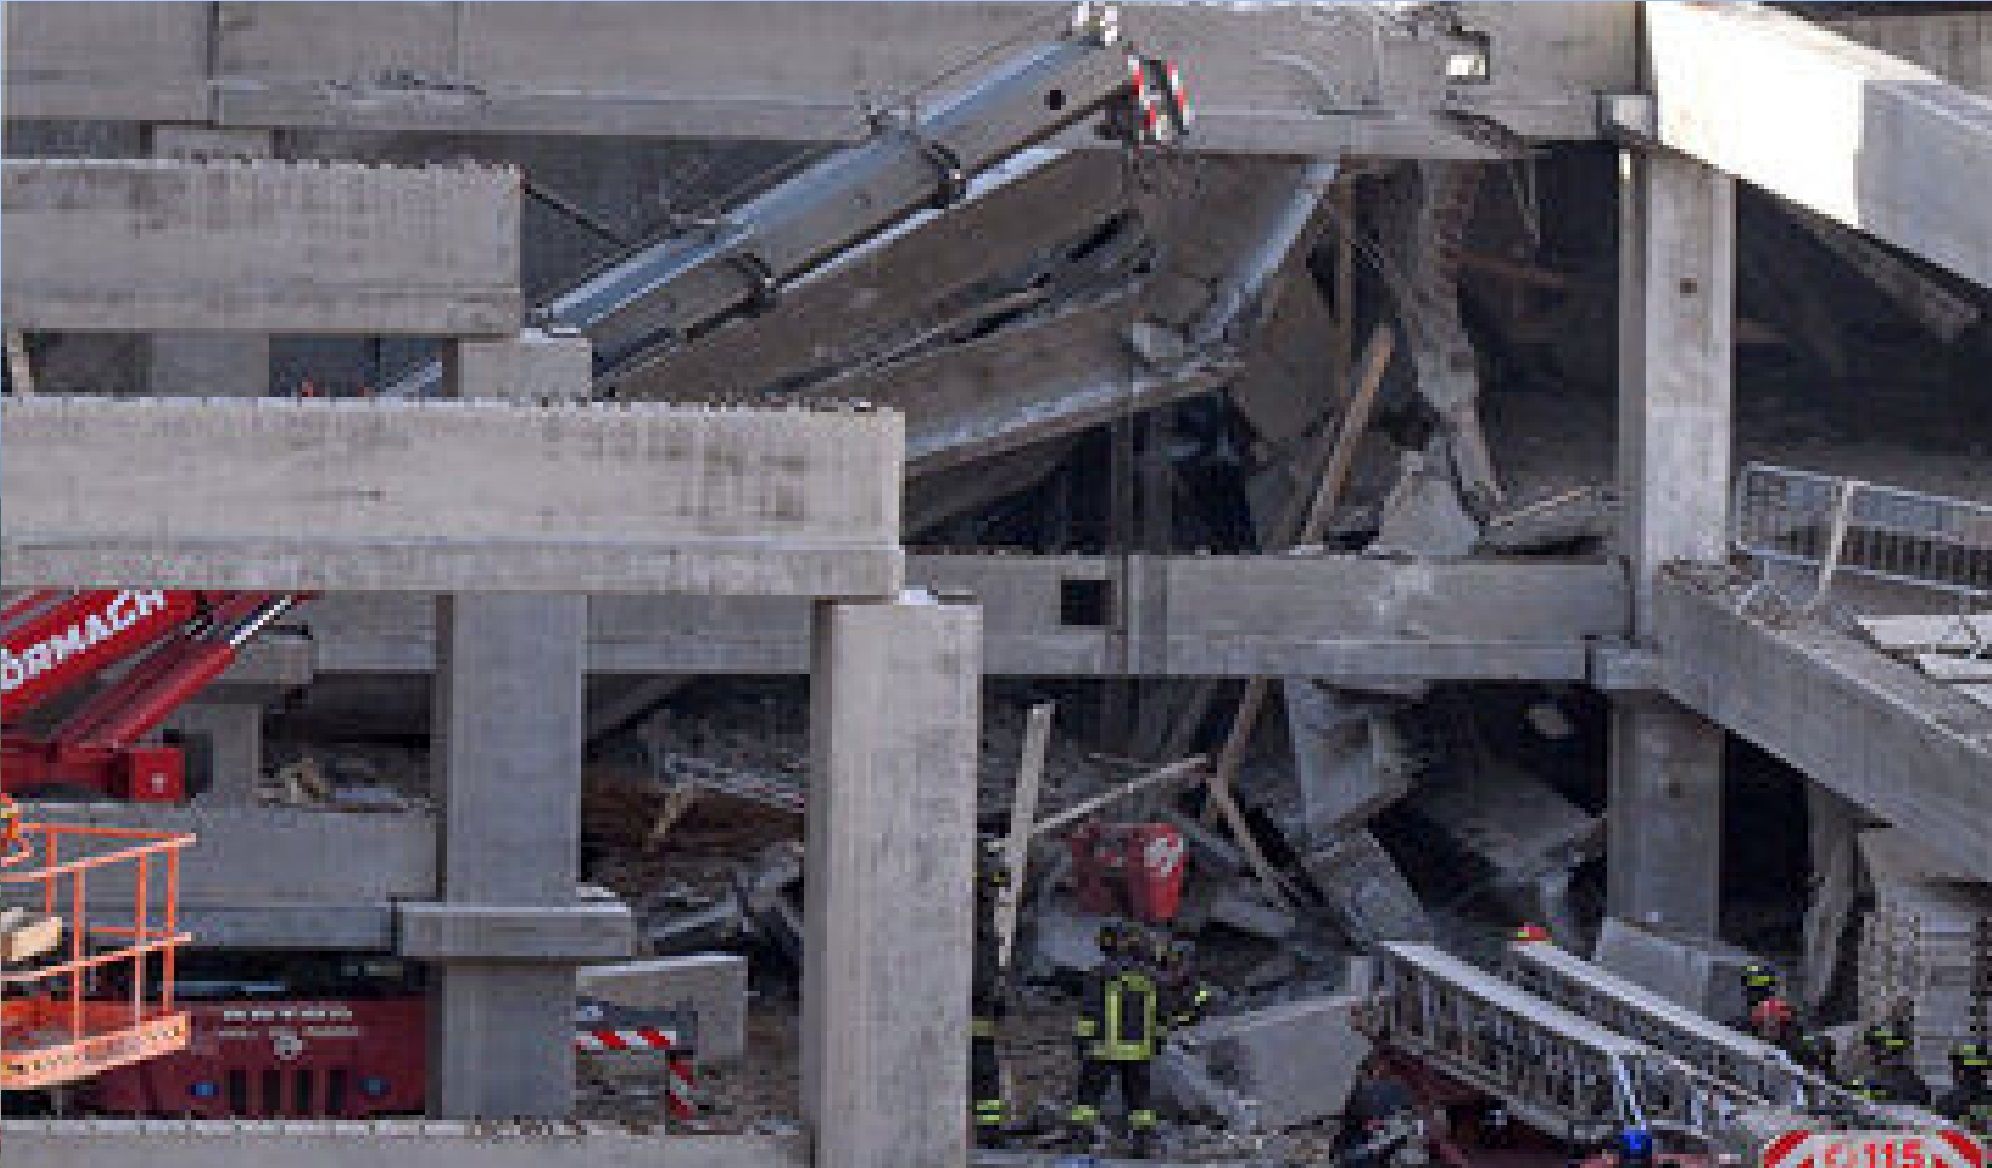 🎥 ۳ کشته و ۲ مفقود در حادثه فروریختن ساختمان در فلورانس ایتالیا